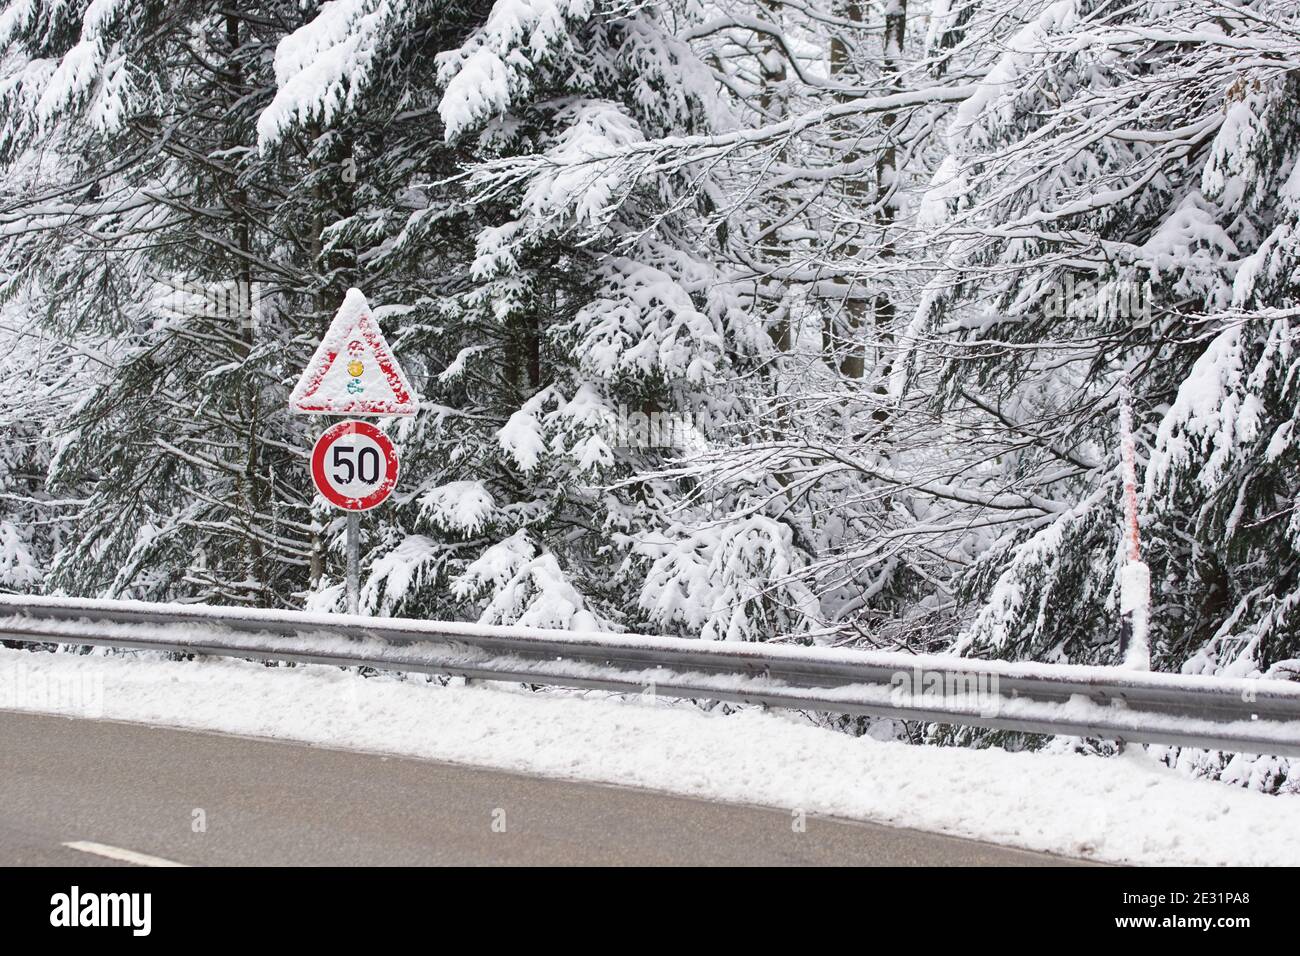 strada sdrucciolevole con segnaletica stradale innevata in inverno, limite di velocità 50 e semaforo di attenzione Foto Stock